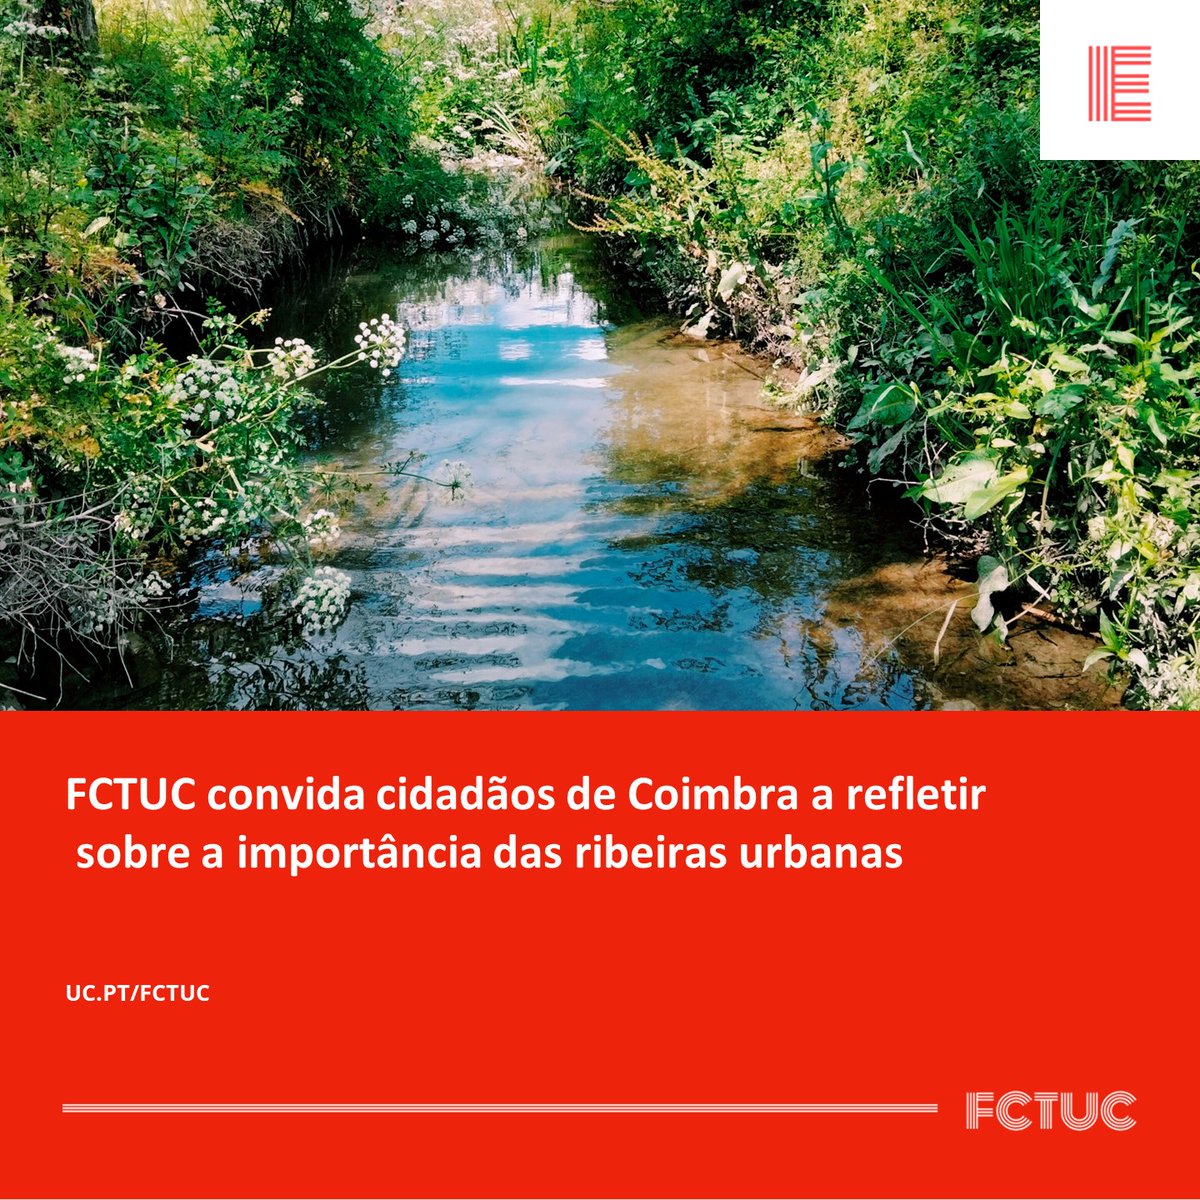 FCTUC convida cidadãos de Coimbra a refletir sobre a importância das ribeiras urbanas. Saiba como participar através do nosso site: uc.pt/fctuc/noticias…